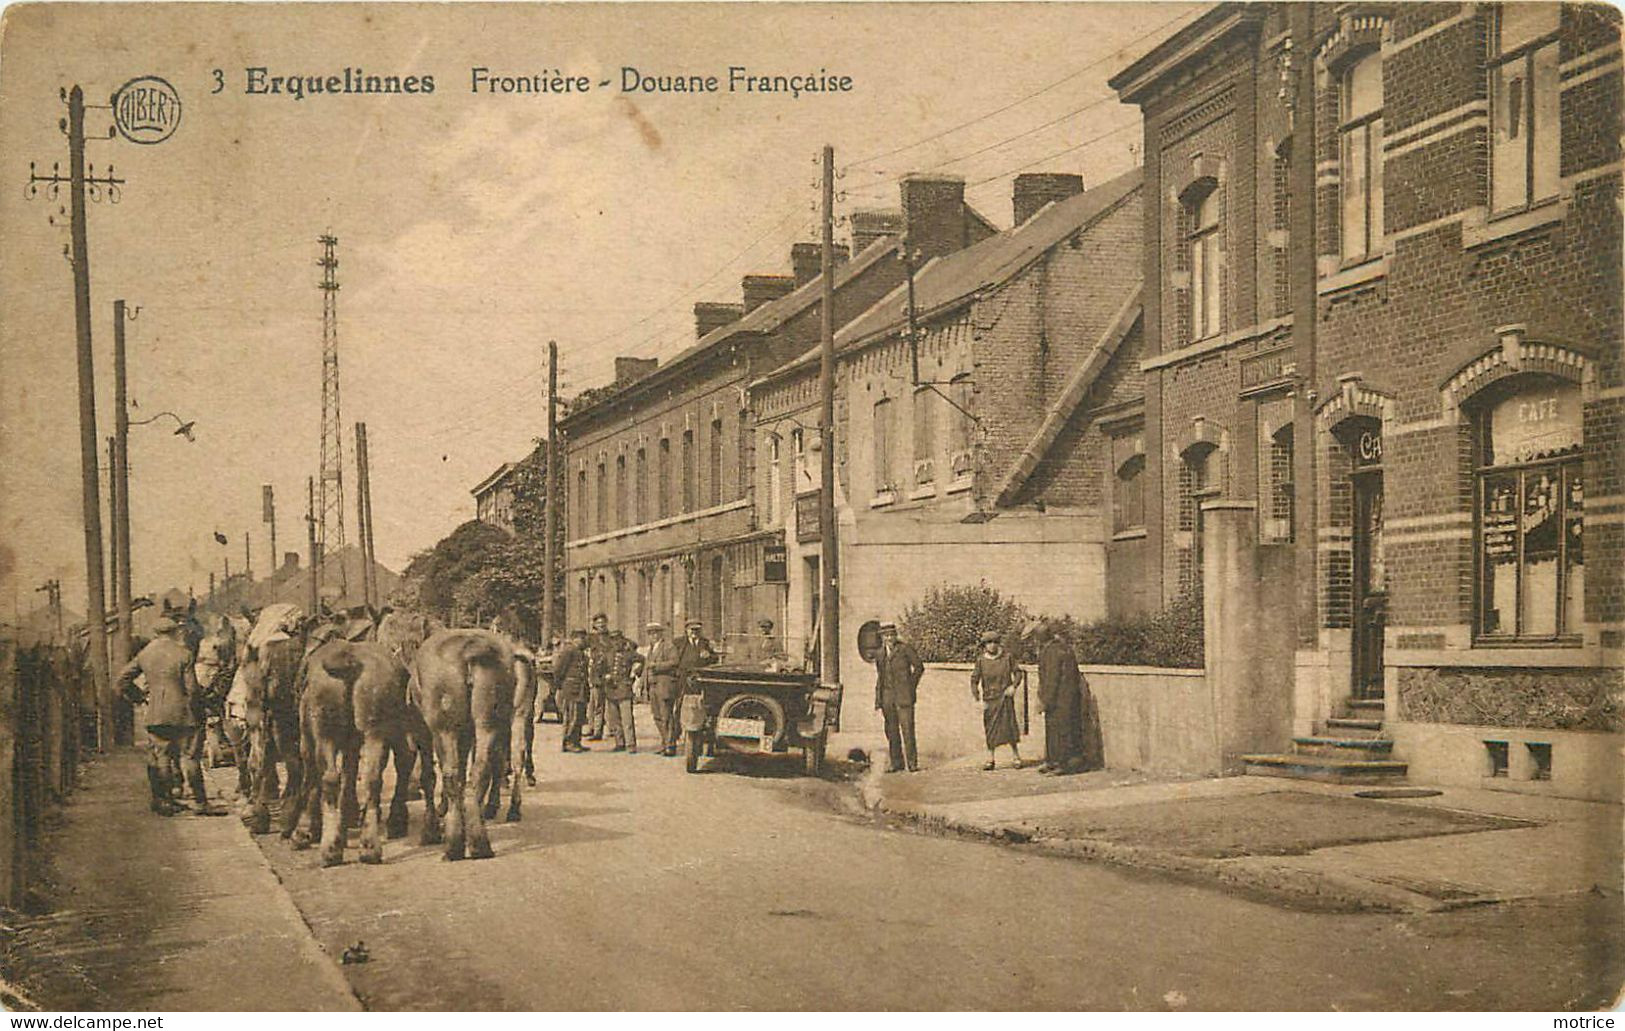 ERQUELINNES - Frontière, Douane Française. - Douane